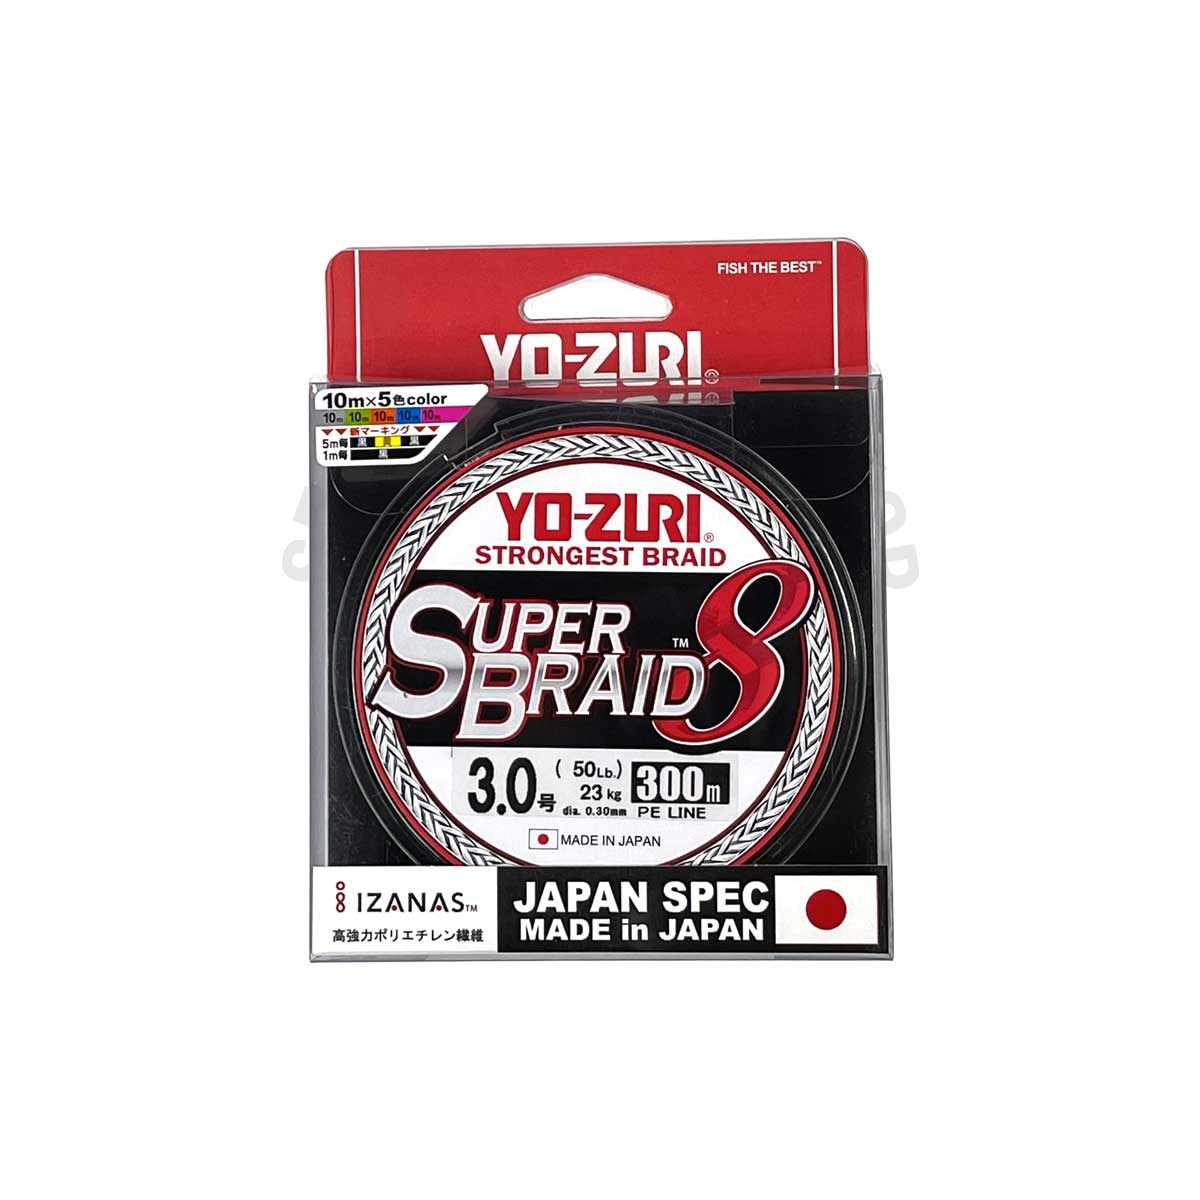 Yo-Zuri Super Braid 8 300m #R1290-PE3 (Multi Color)*สายพีอี - 7